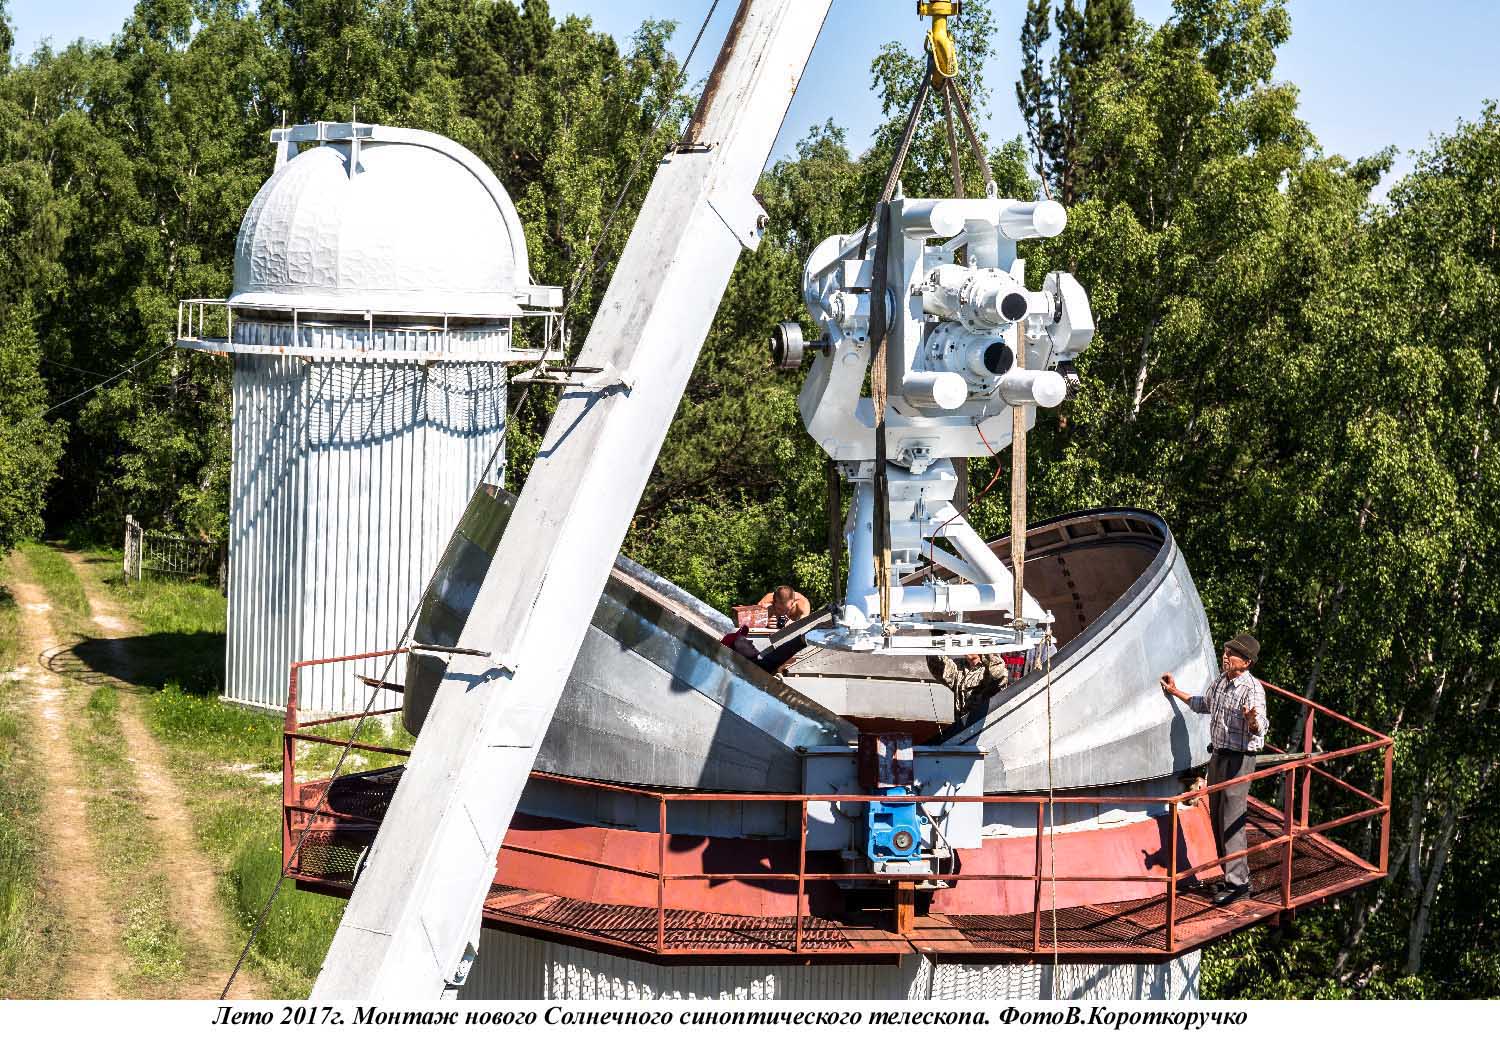 Ближе к Солнцу: 40 лет Байкальской астрофизической обсерватории